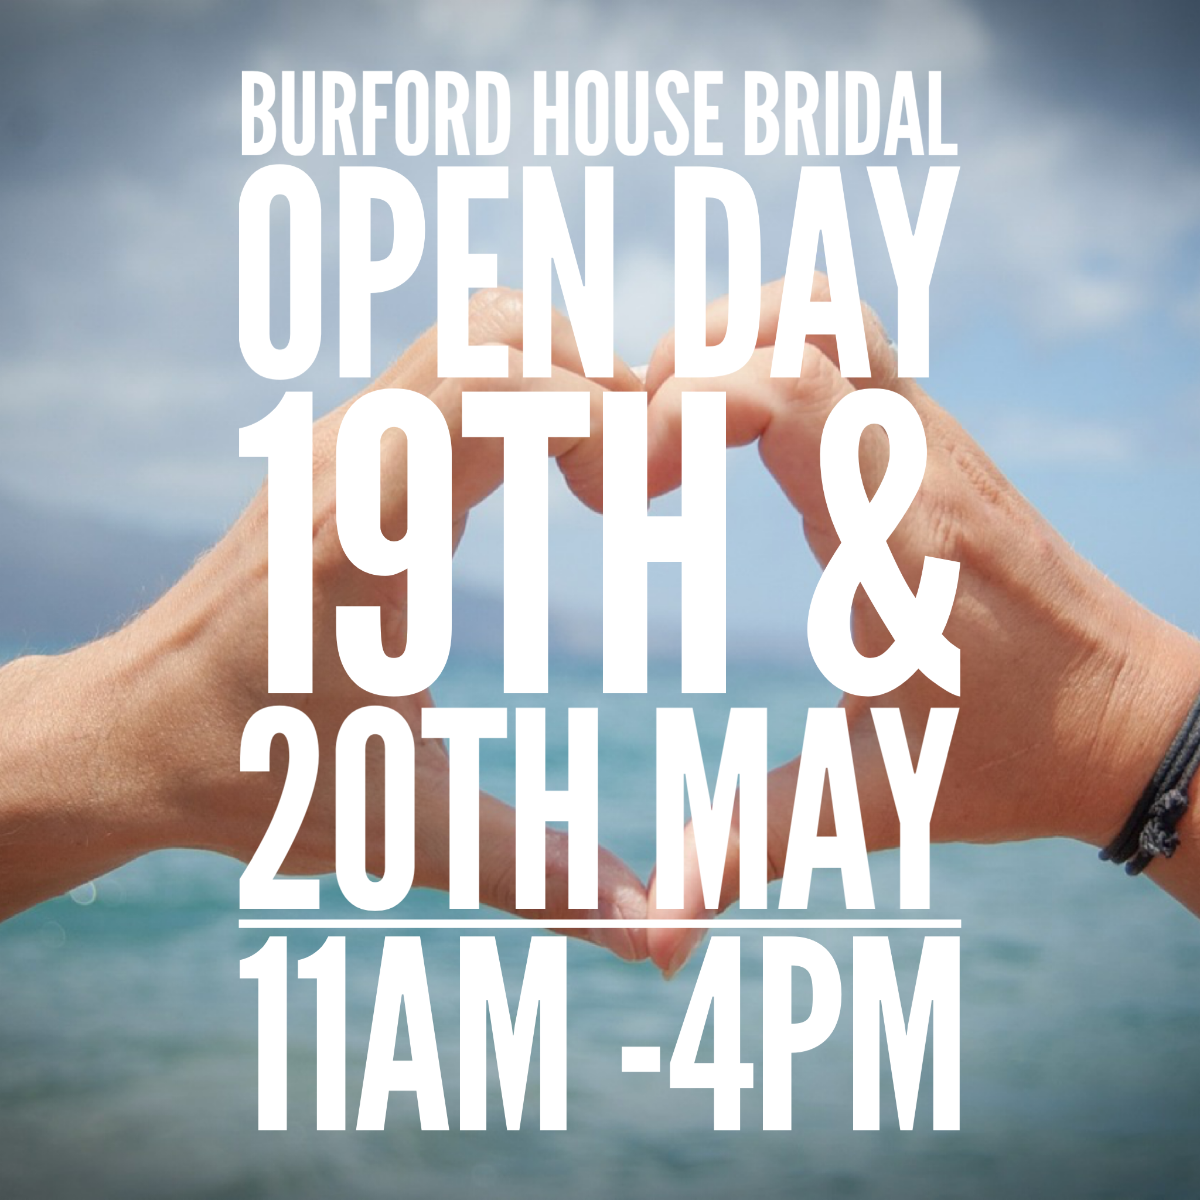 Burford House Bridal-Image-18